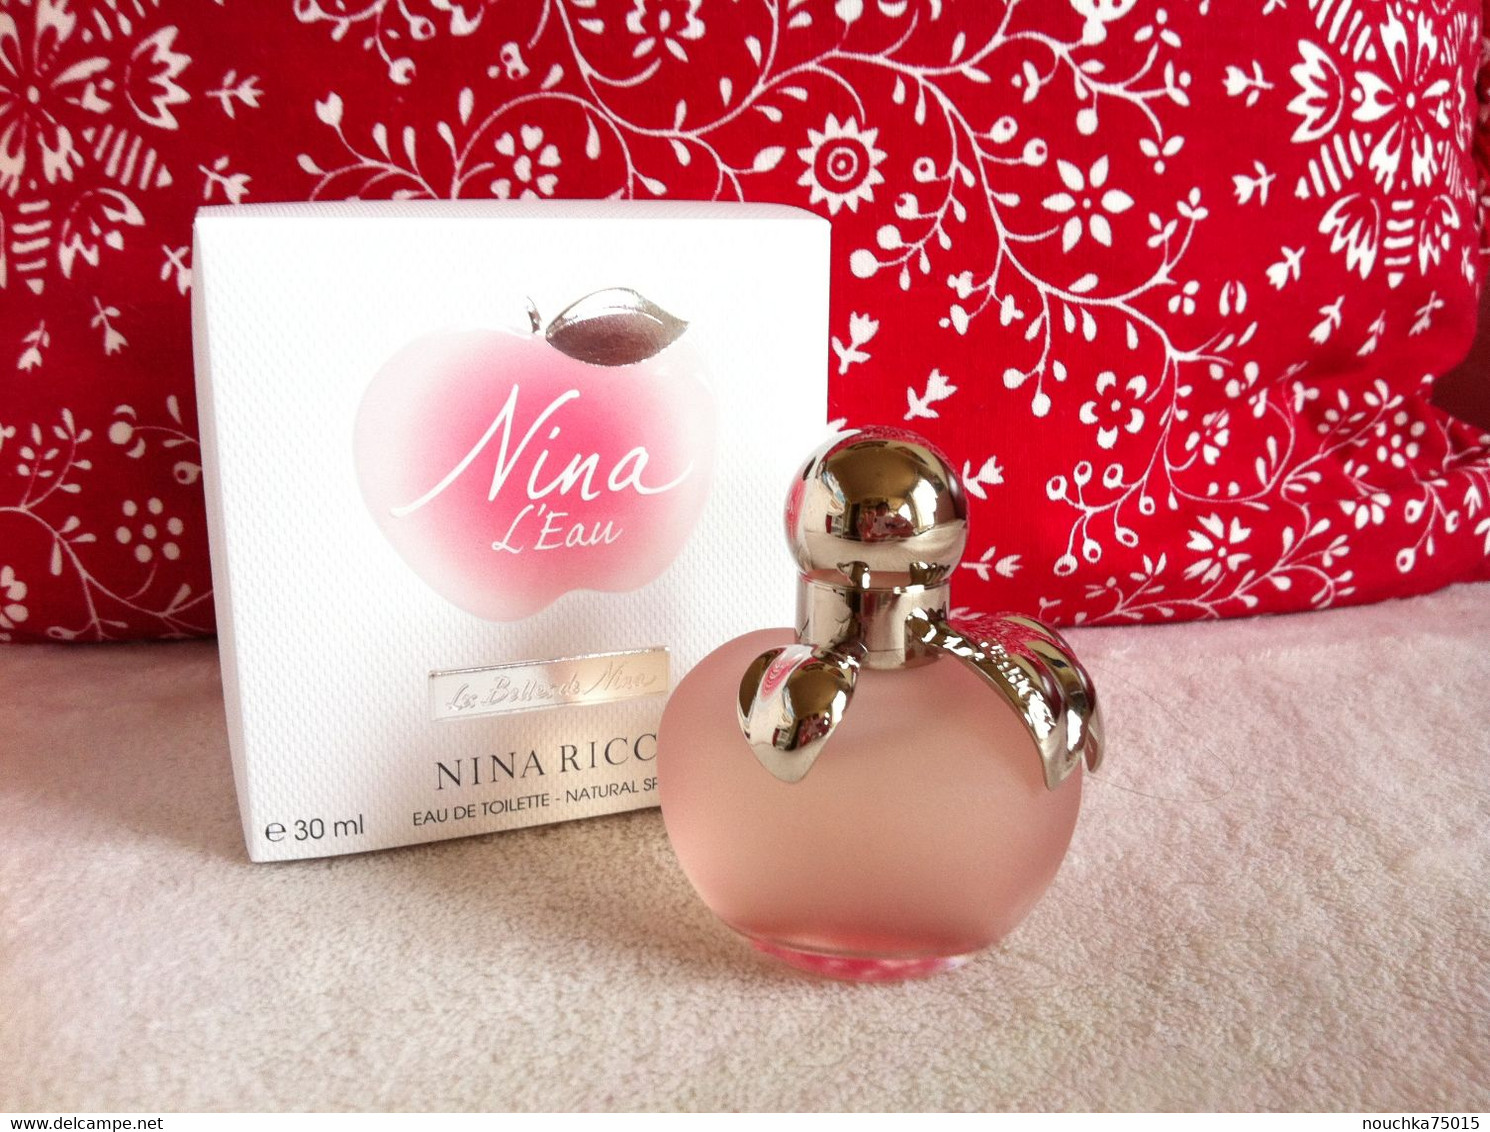 Nina Ricci - Parfum Nina, L'Eau - 30ml - Femme